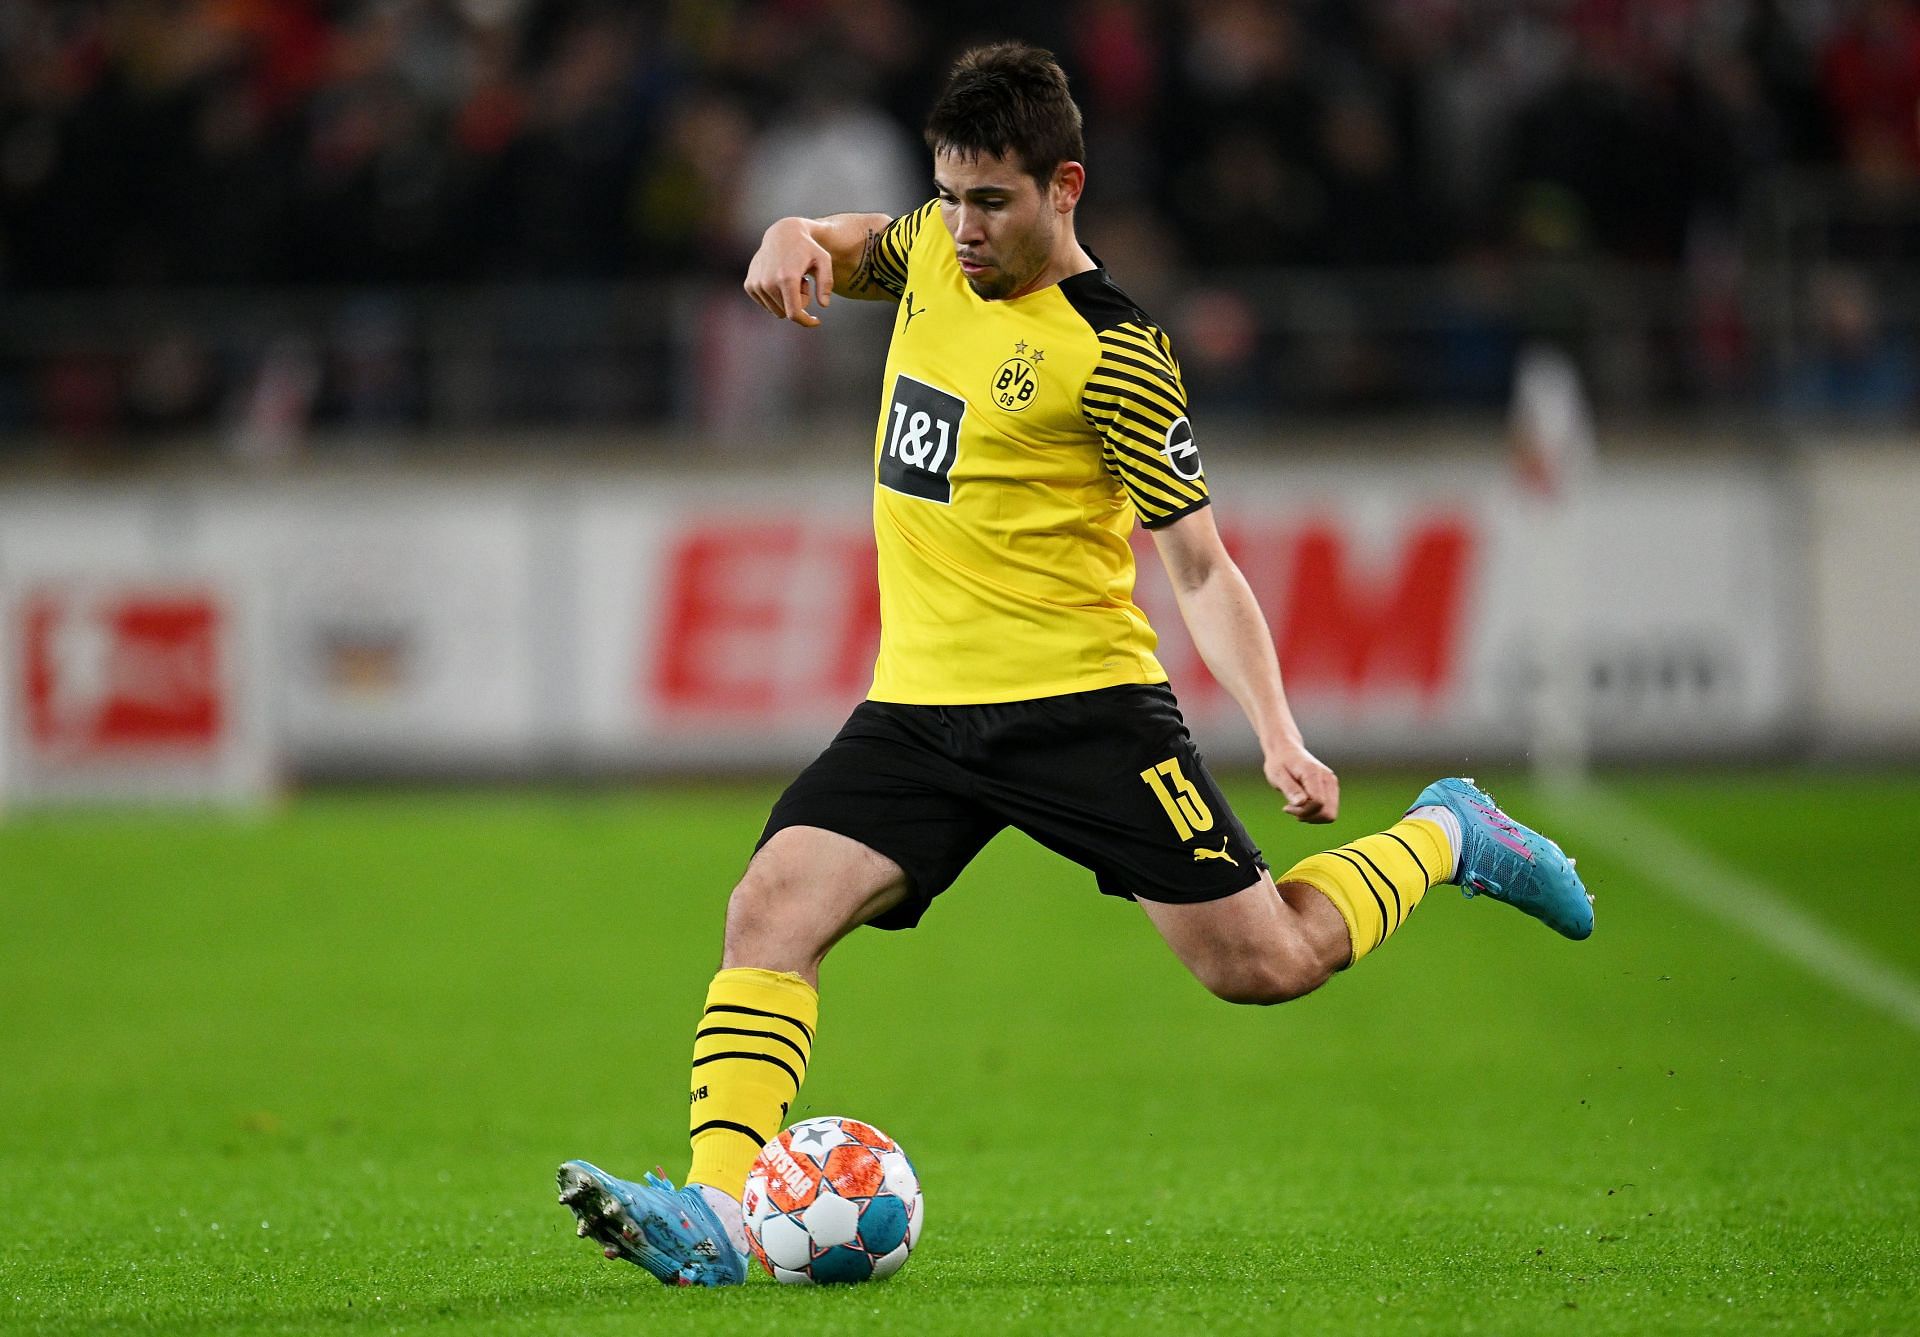 Guerreiro plays as a left-back for Borussia Dortmund